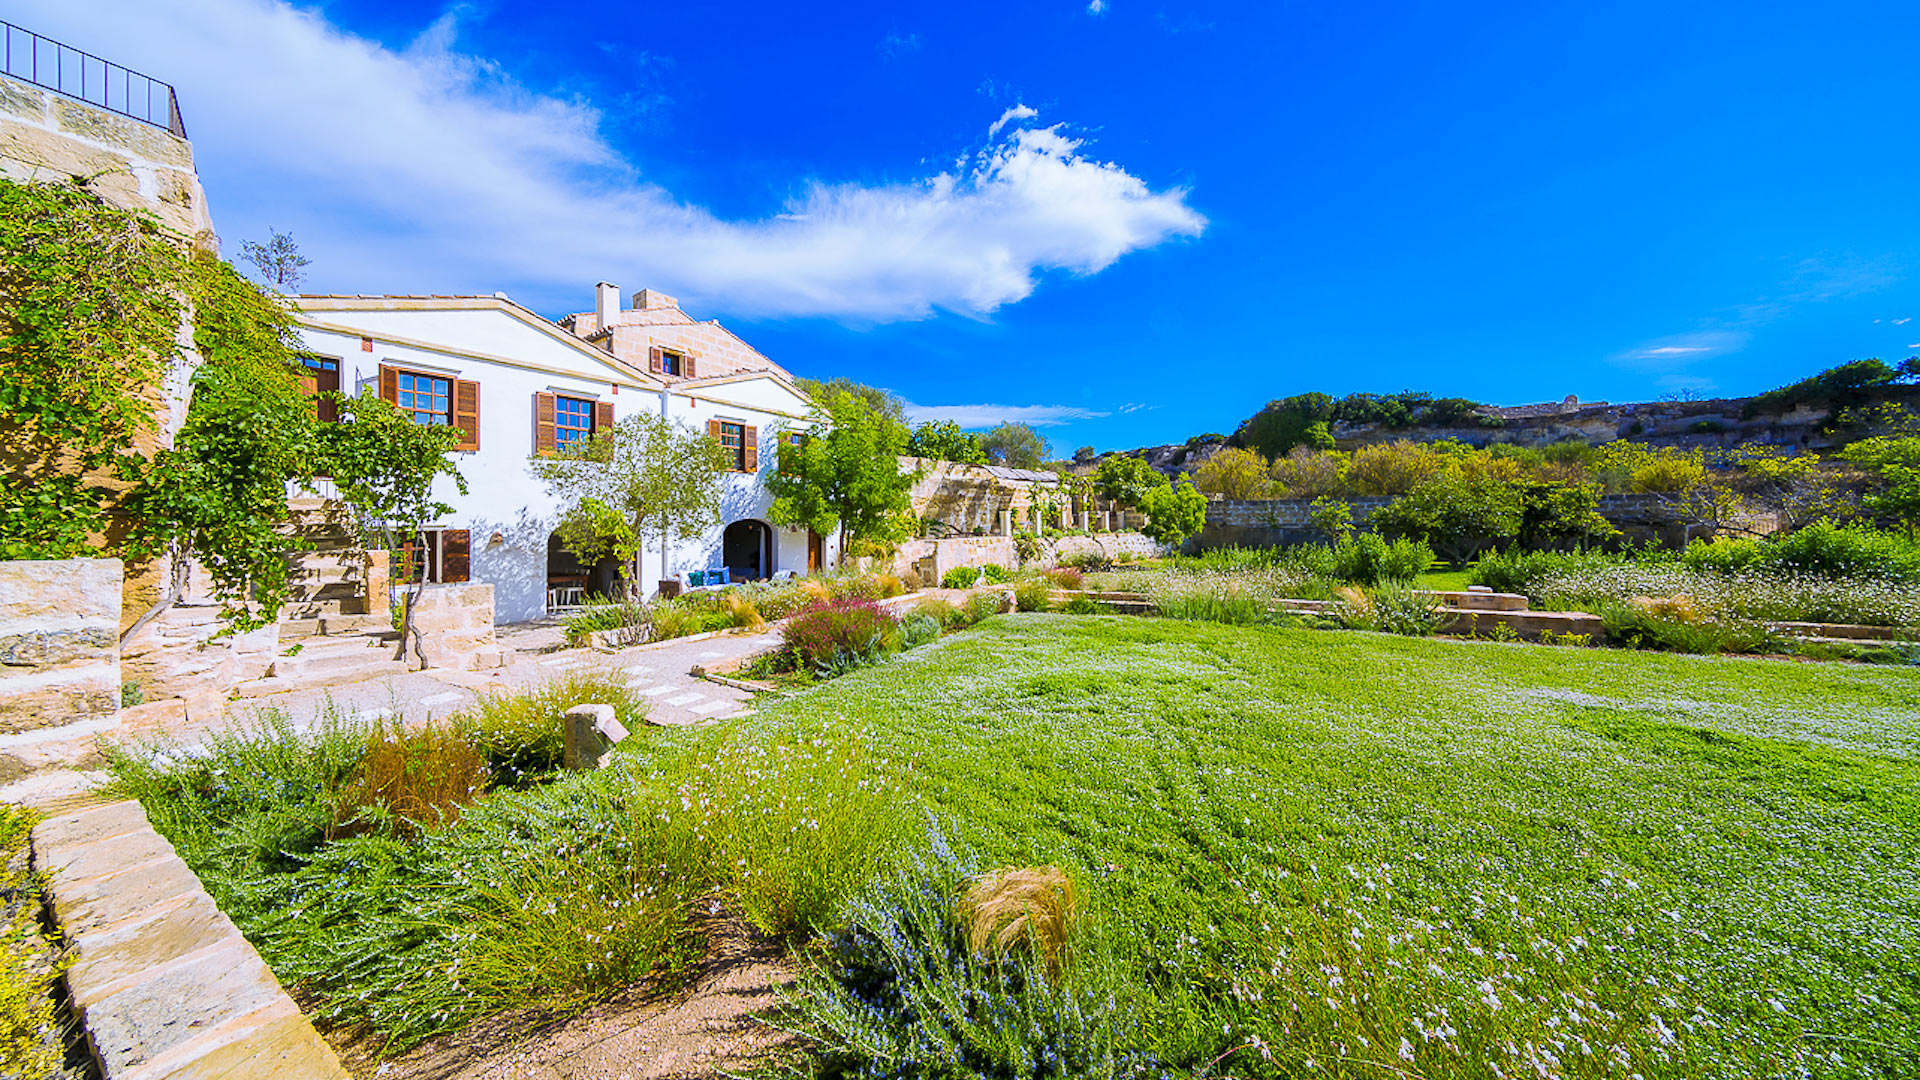 Villa Aleiora - Alquiler de casa en Menorca, Alaior | Villanovo